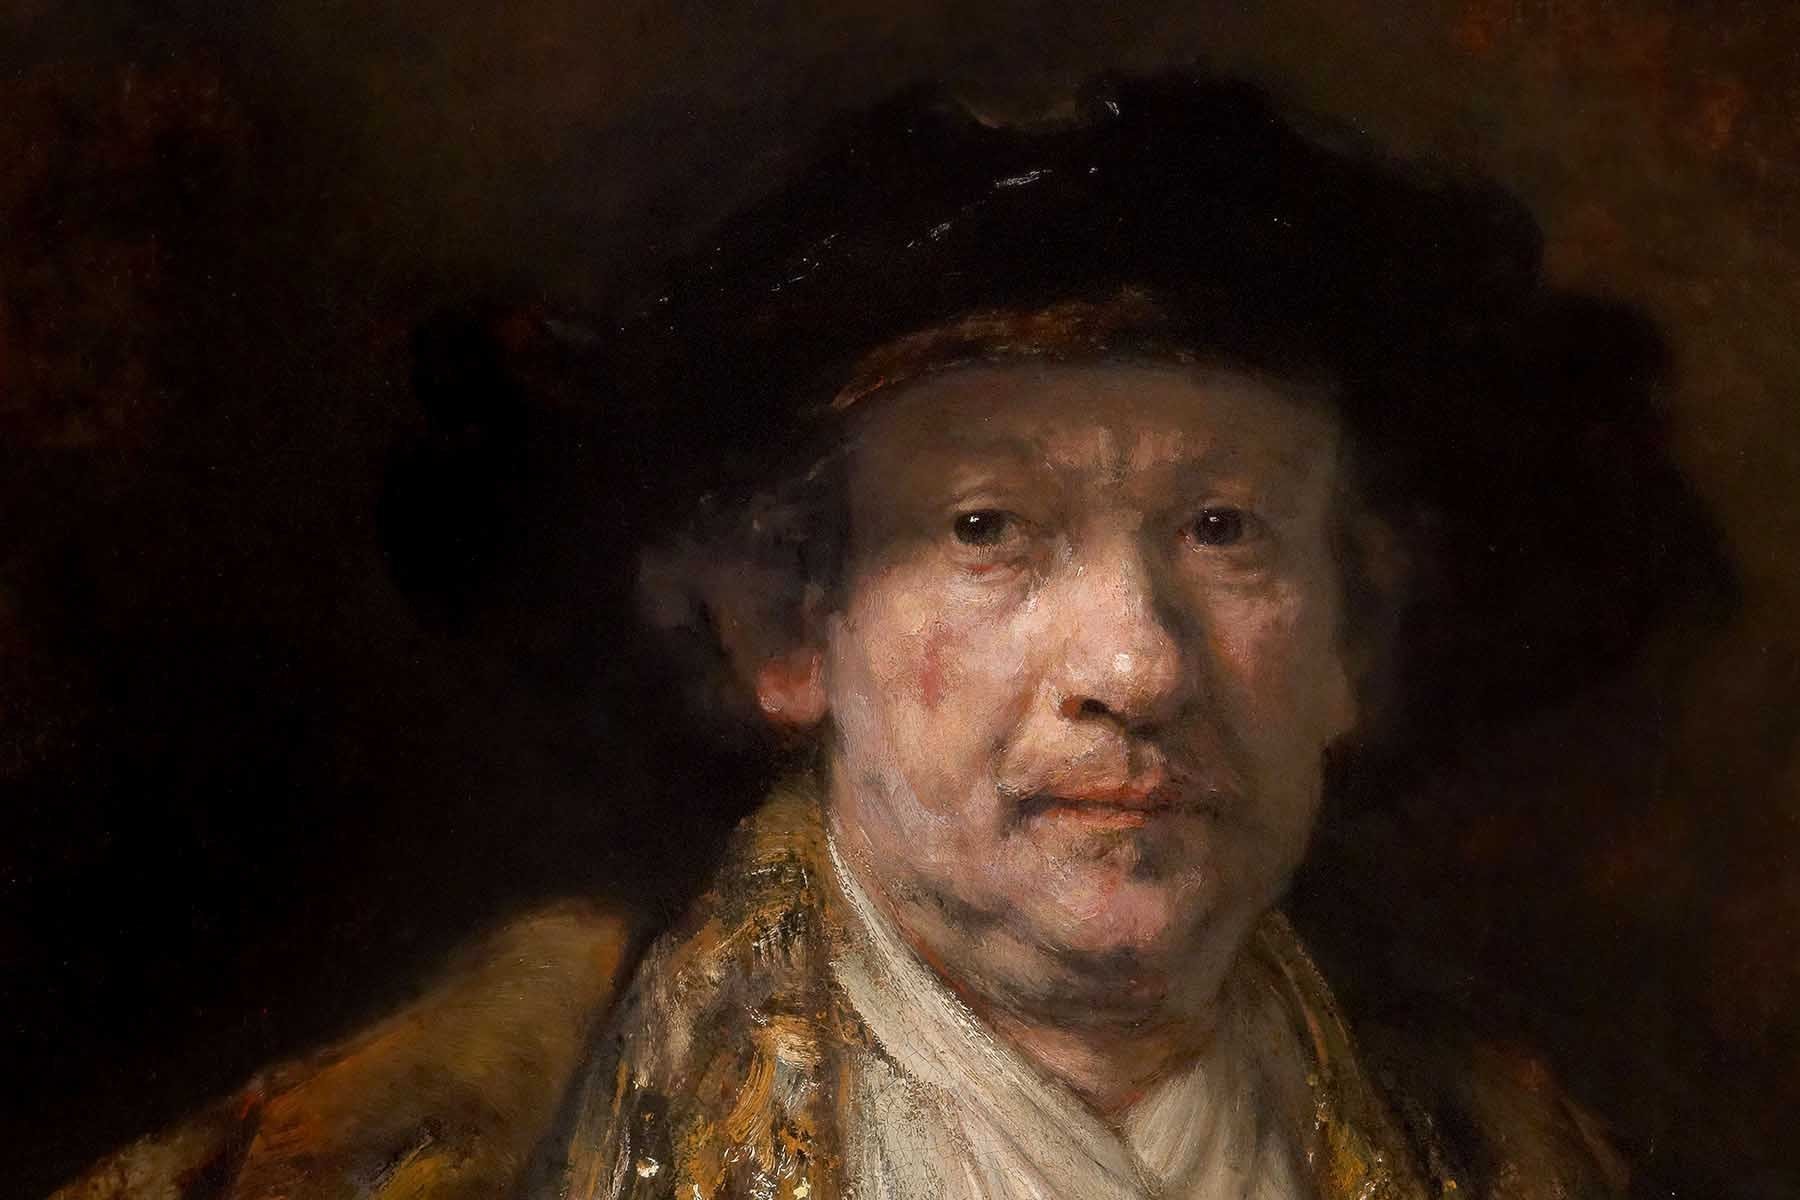 Bir ressam, ressamların en yeteneklisi: Rembrandt